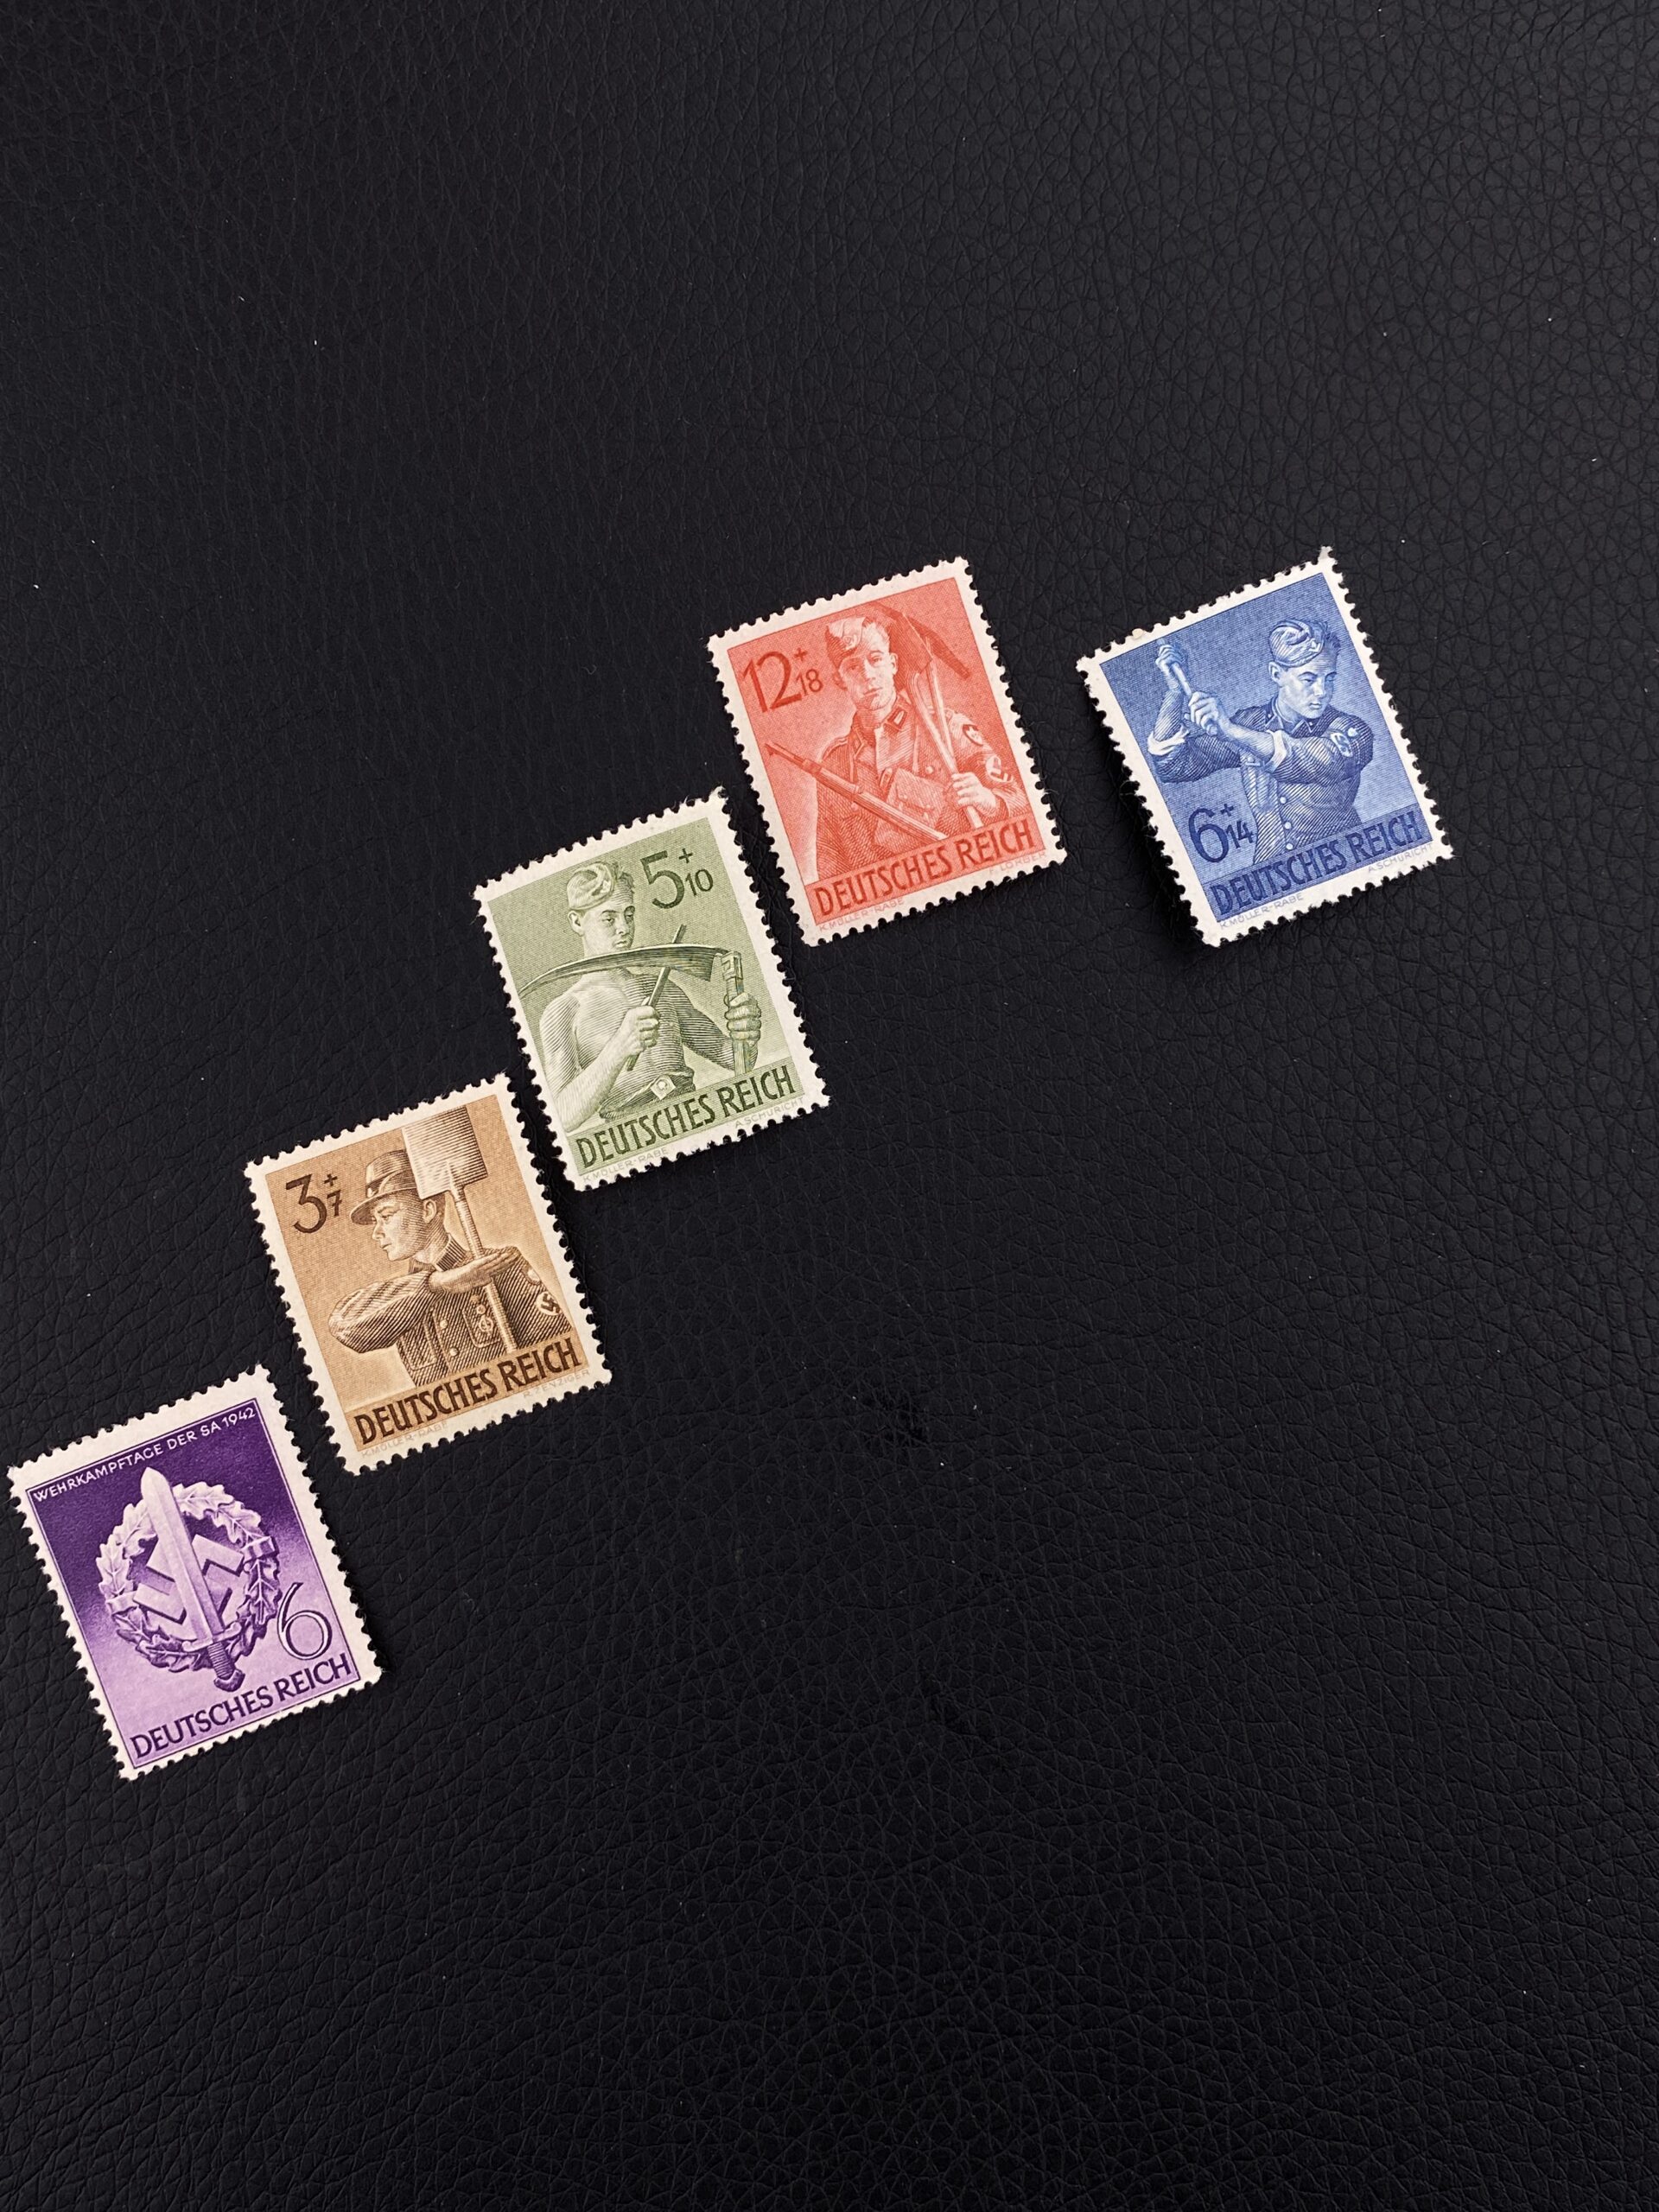 Полная серия почтовых марок “8-летие службы труда” RAD. 1943г.